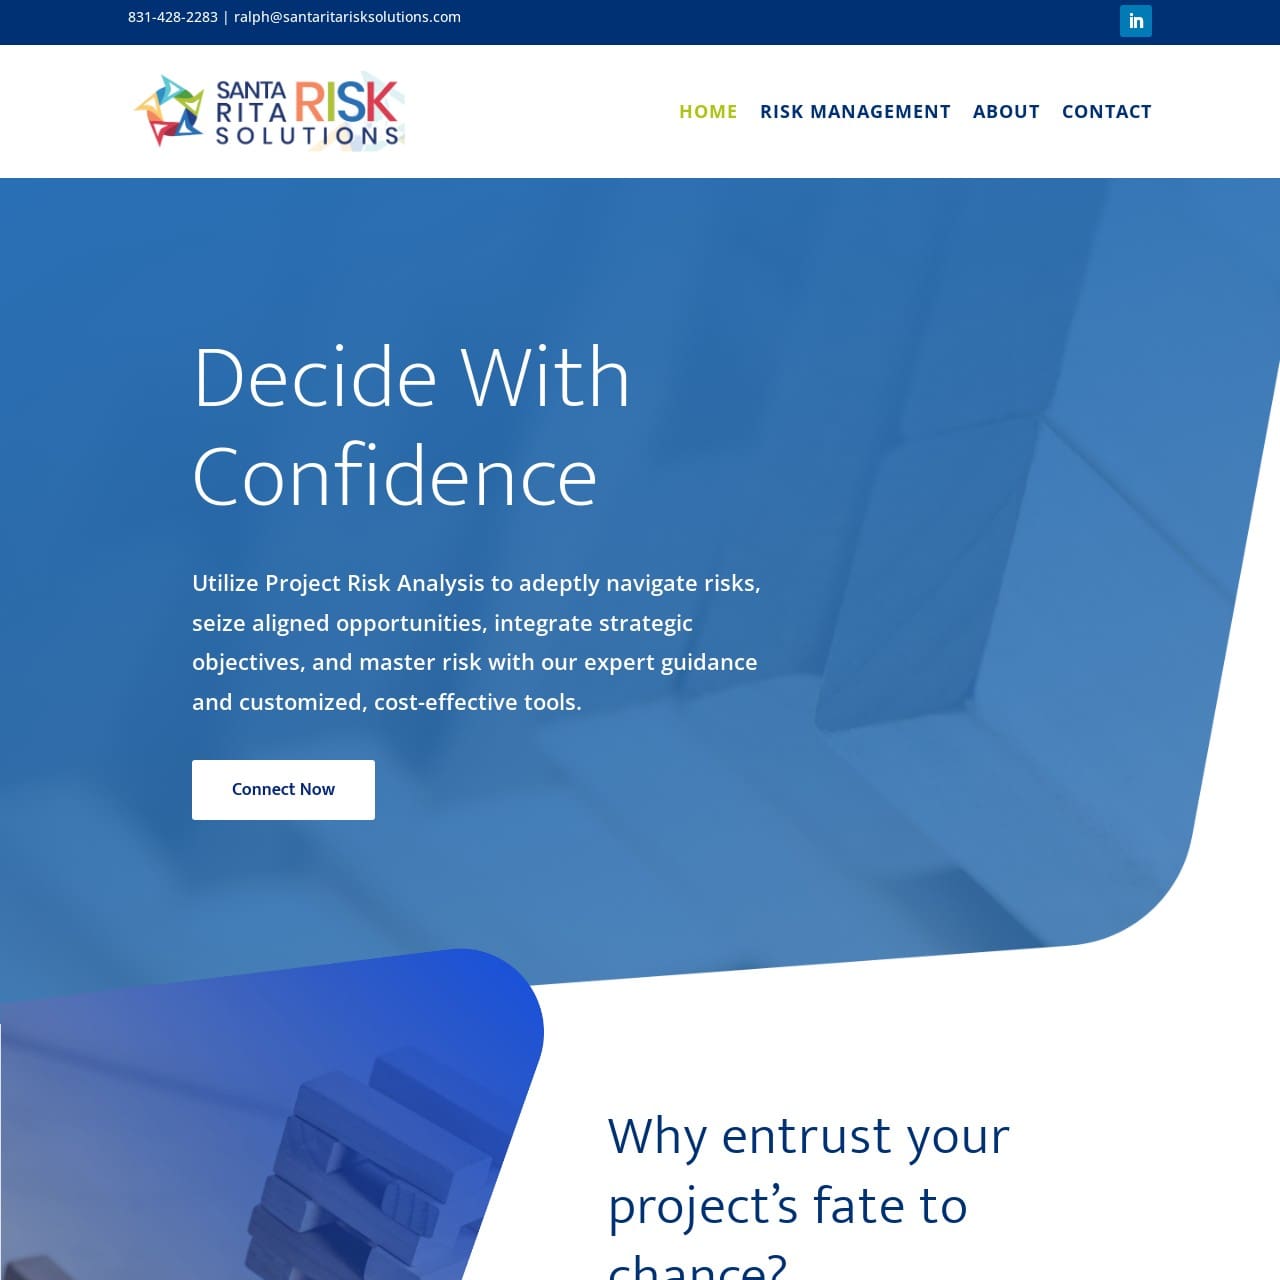 Santa Rita Risk Solutions Website Design Shield bar Marketing Portfolio